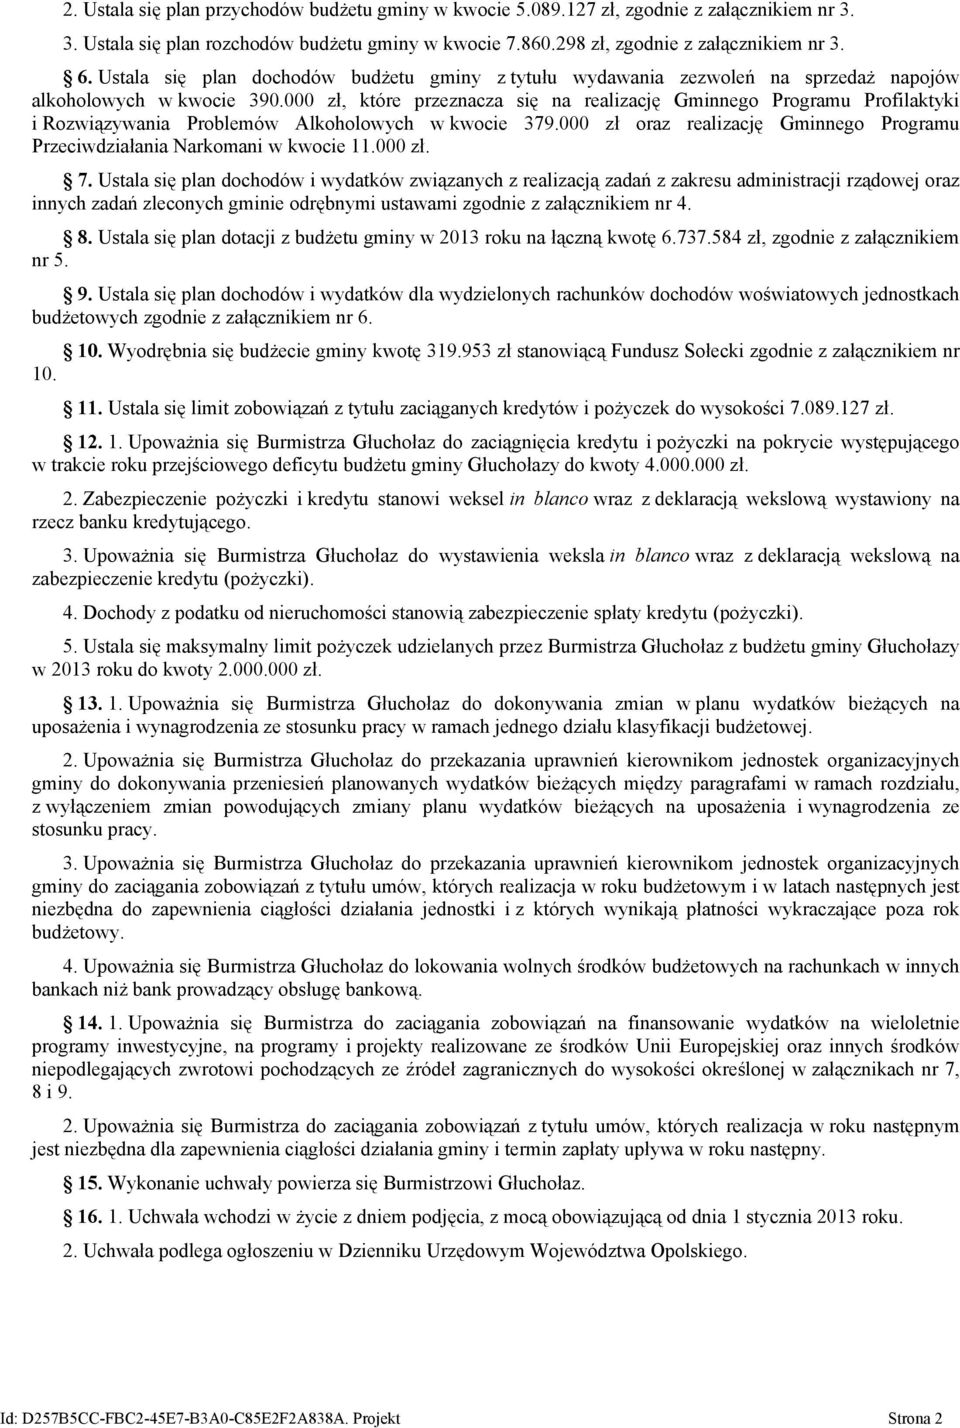 000 zł, które przeznacza się na realizację Gminnego Programu Profilaktyki i Rozwiązywania Problemów Alkoholowych w kwocie 379.